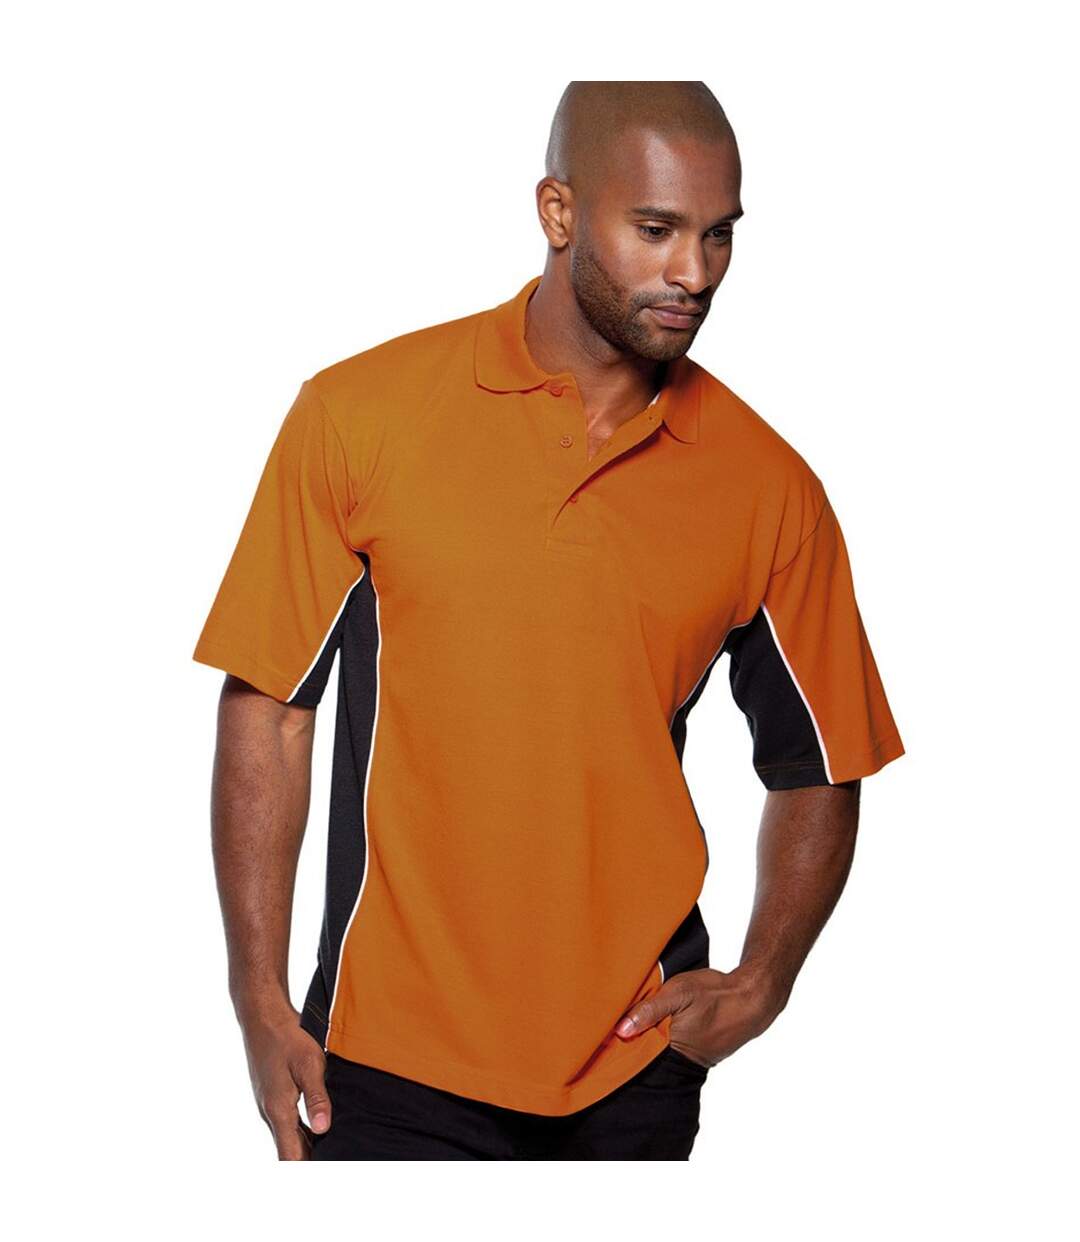 Gamegear - Polo à manches courtes - Homme (Orange/Gris/Blanc) - UTBC412